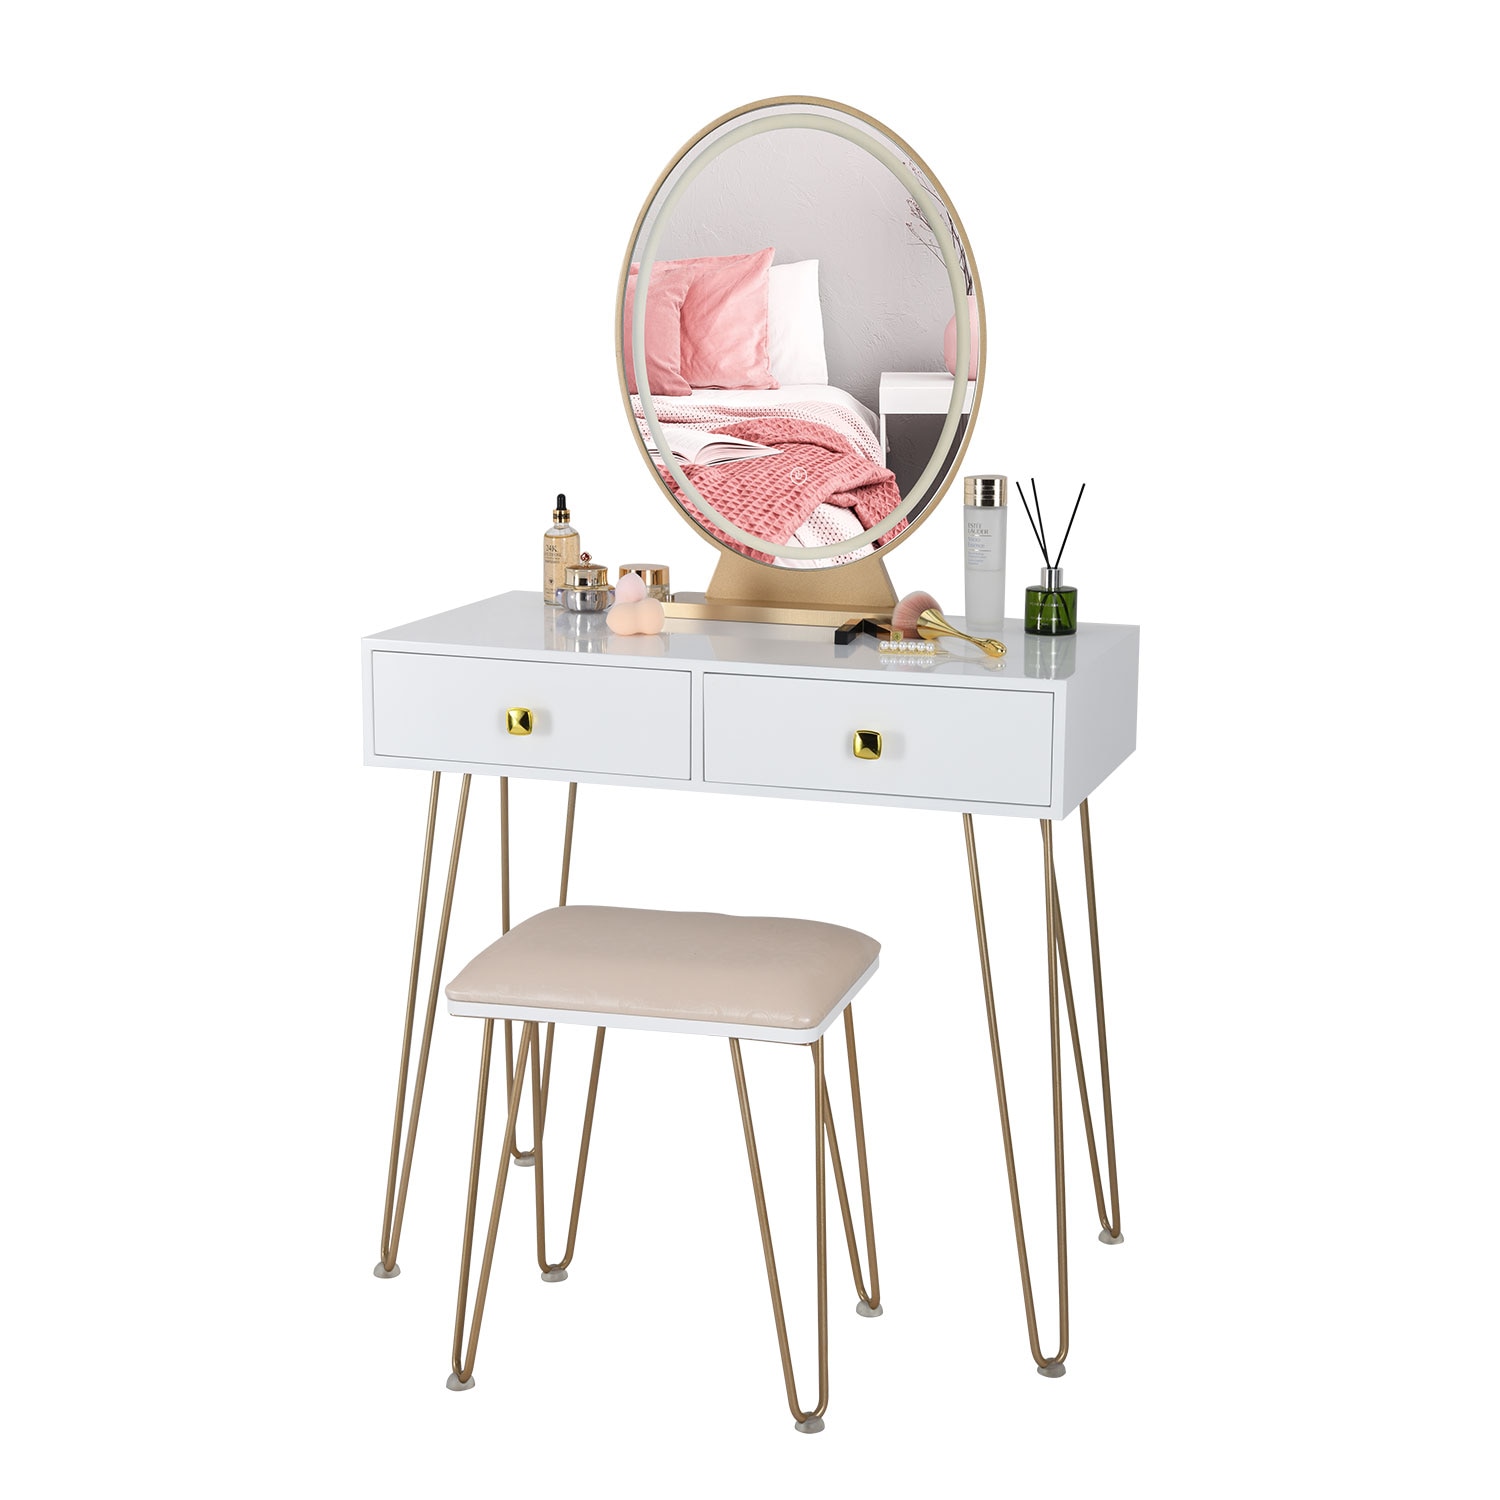 KingYee-coiffeuse-de-maquillage-3-couleurs-miroir-LED-mobilier-de-chambre-coucher-tabouret-de-maquillage-de